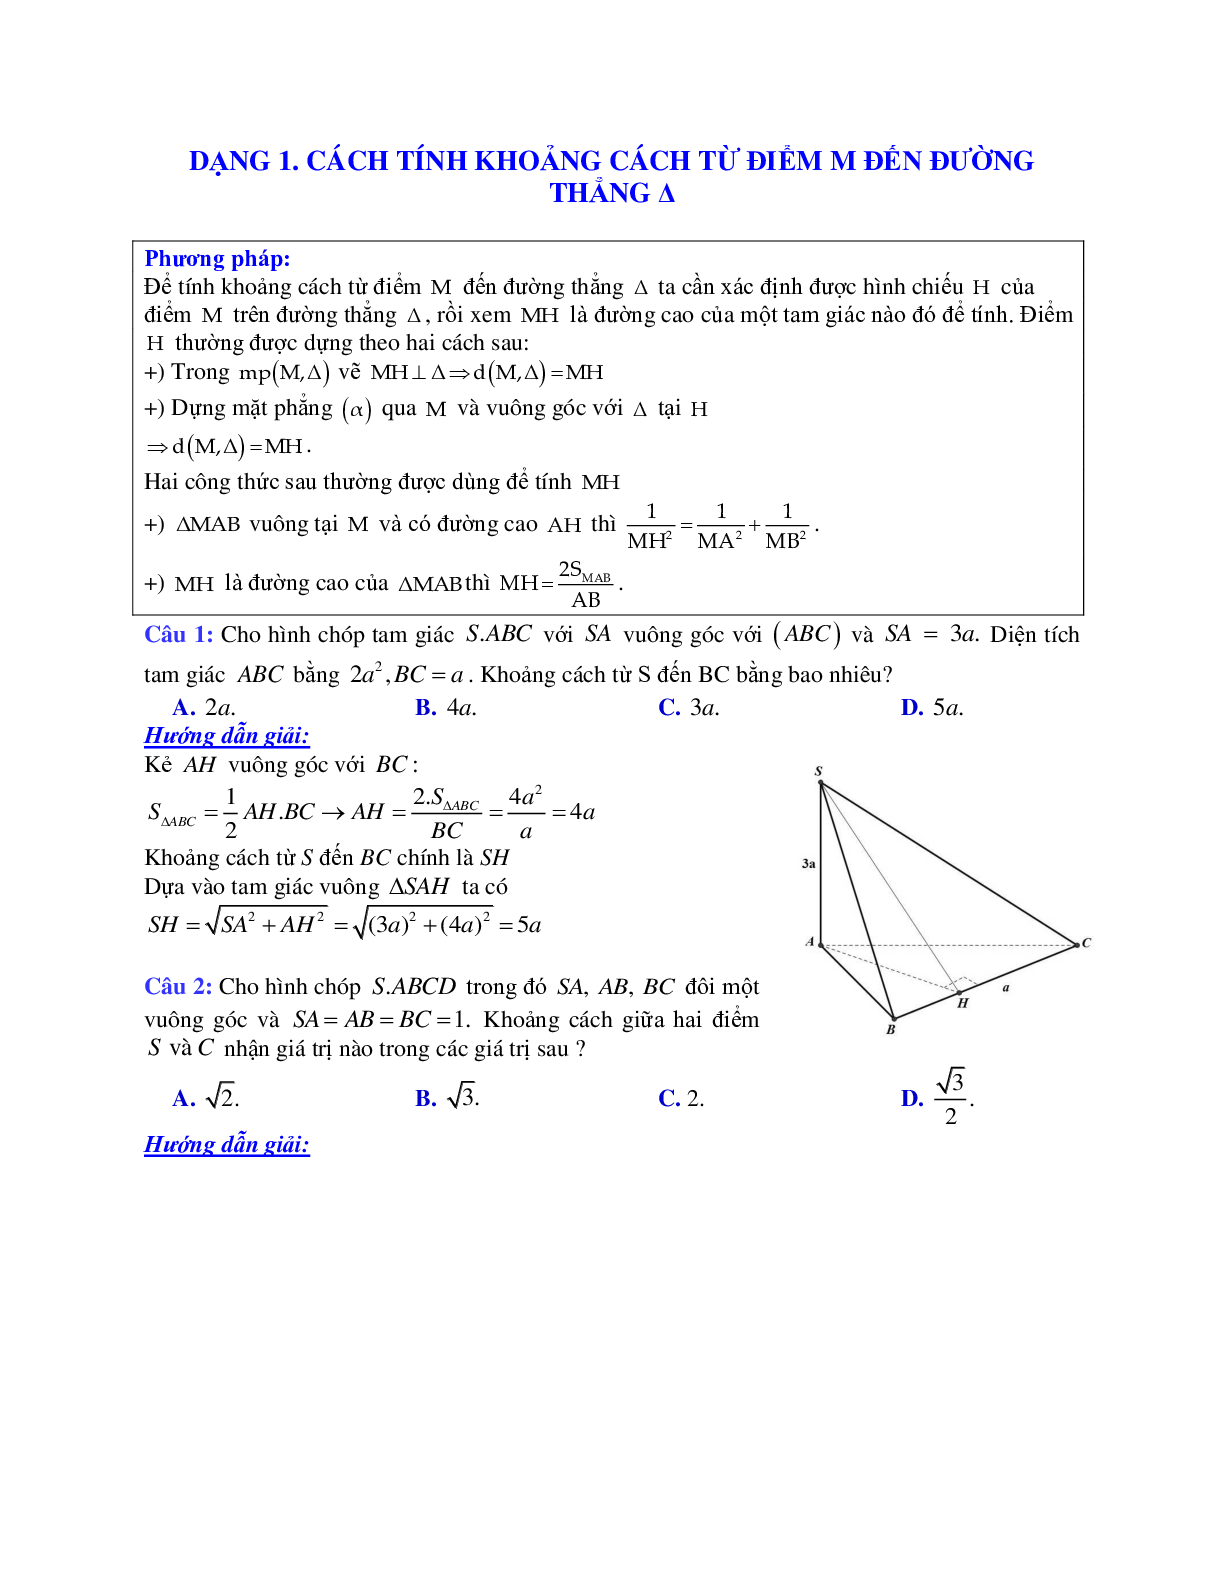 Phương pháp giải và bài tập về Cách tính khoảng cách từ điểm M đến đường thẳng Delta chọn lọc (trang 1)